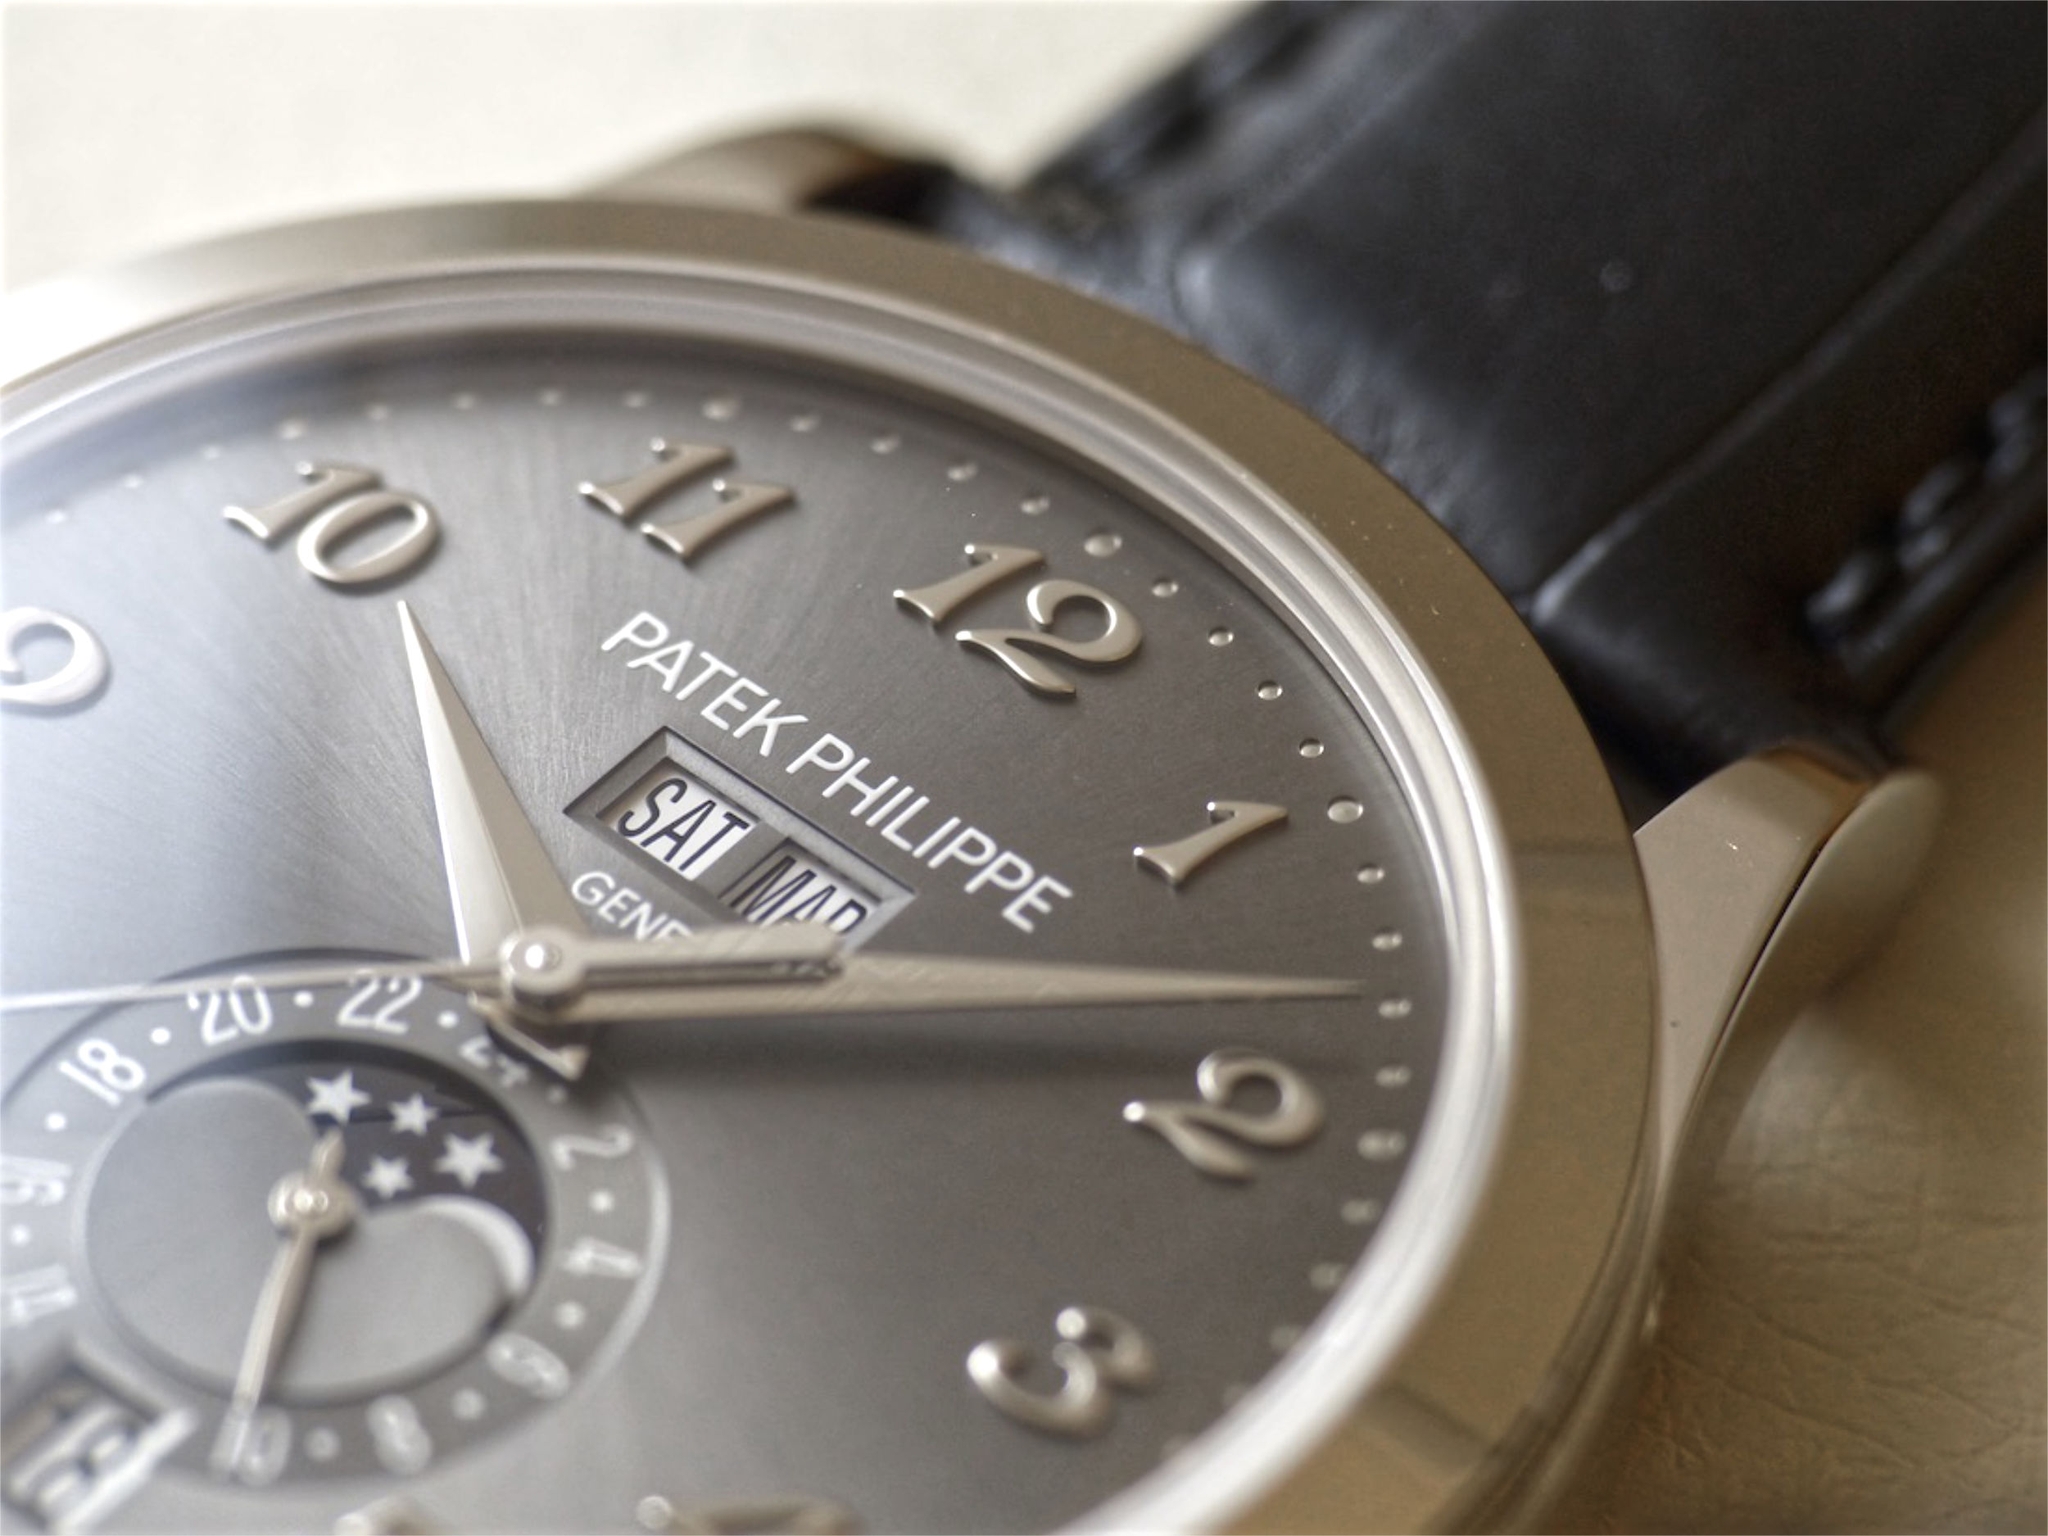 Đồng hồ Patek Philippe Ref.5396G-014 giới thiệu năm 2016, hiện đã ngừng sản xuất